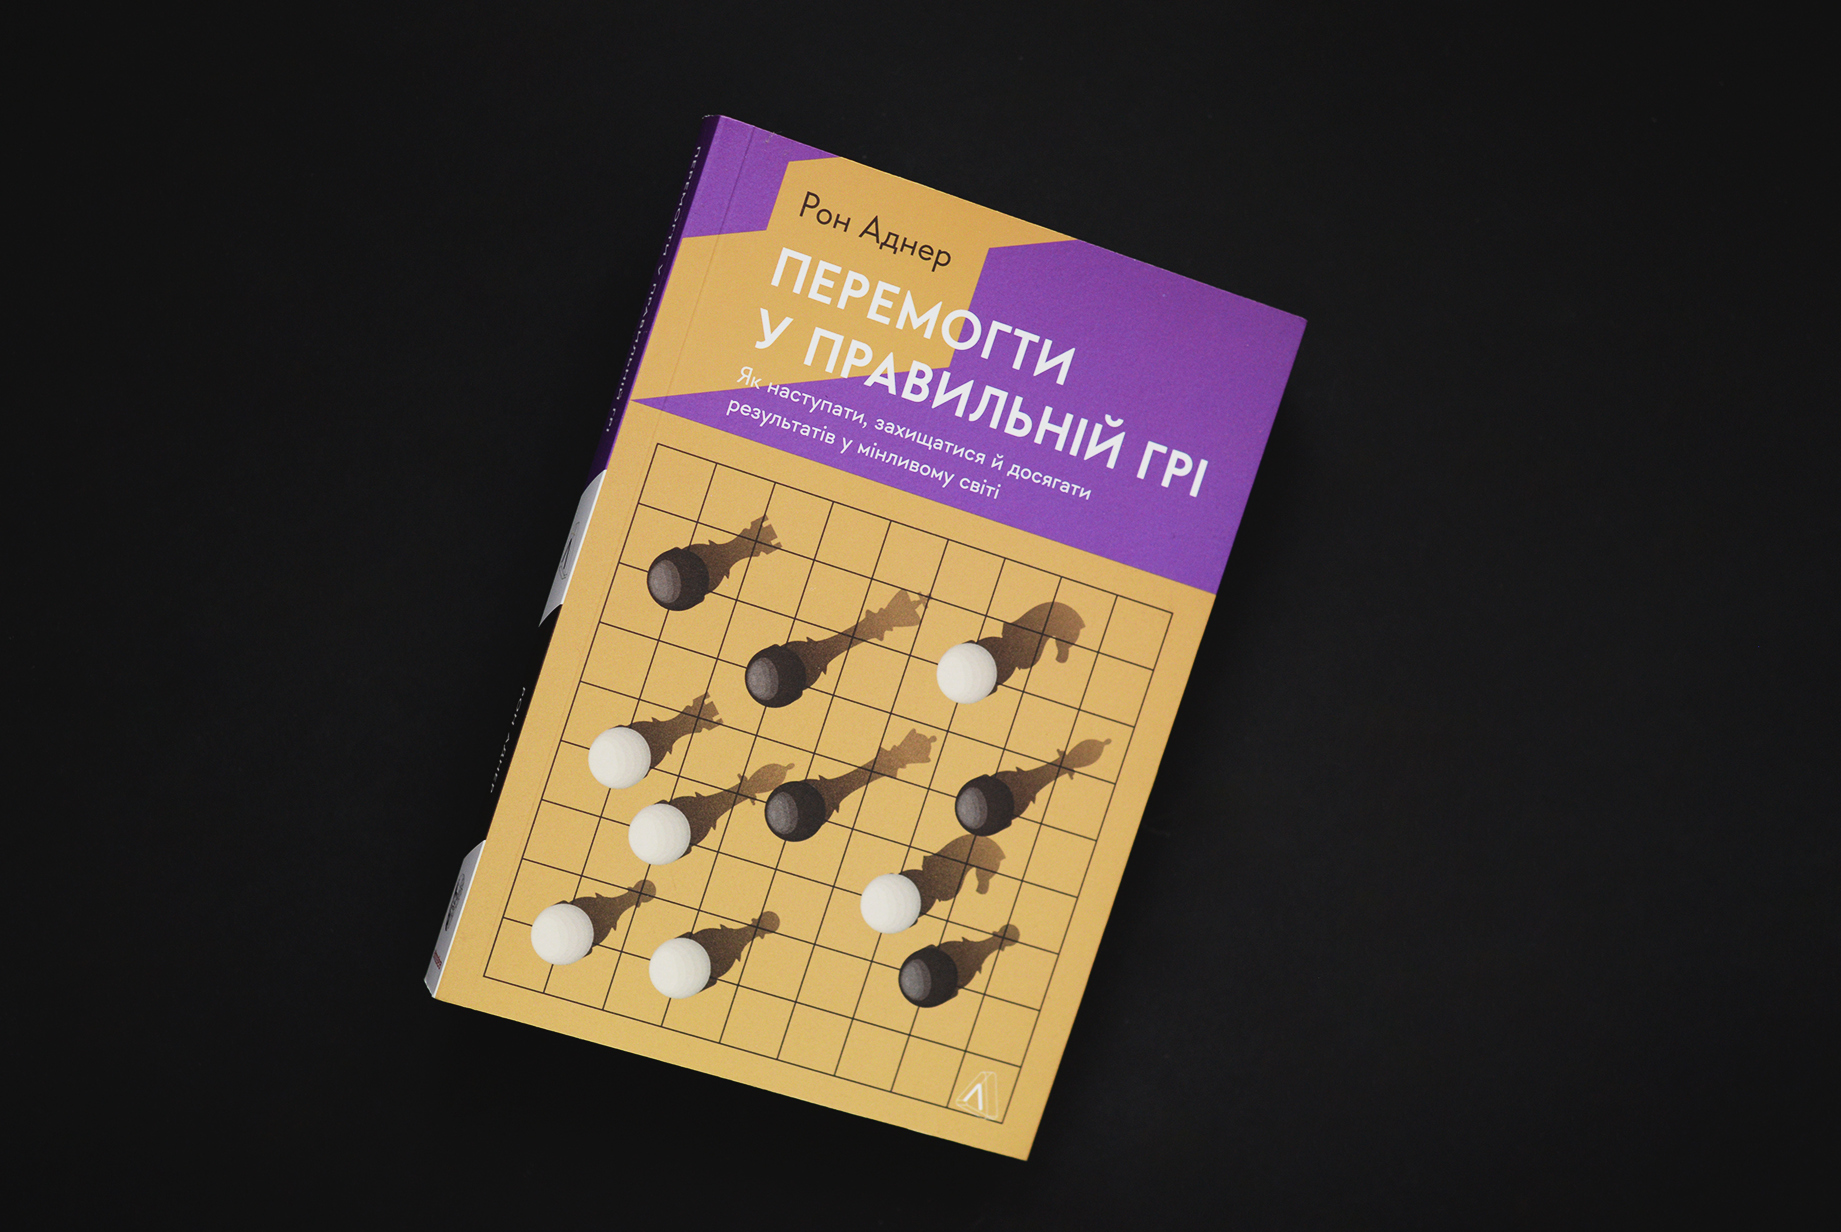 Українське видання книги «Перемогти у правильній грі», яке вийшло у видавництві Лабораторія